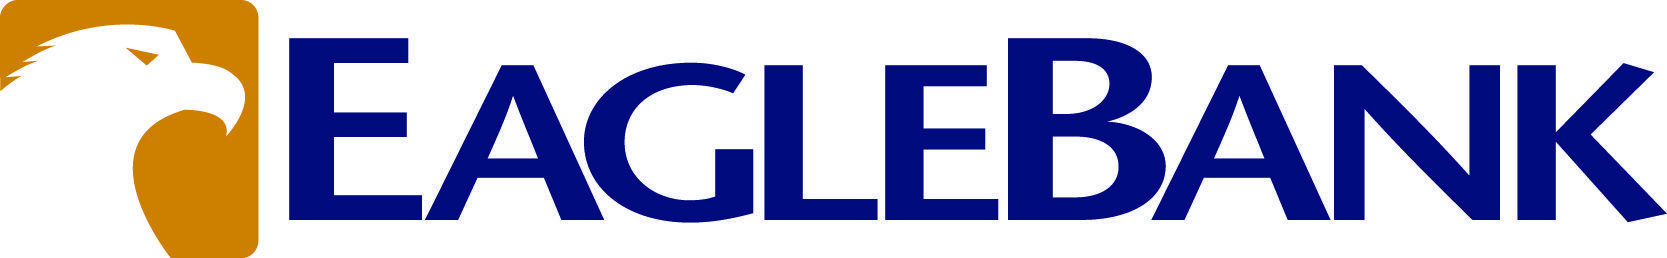 Eagle Bank Logo - Eagle bank Logos